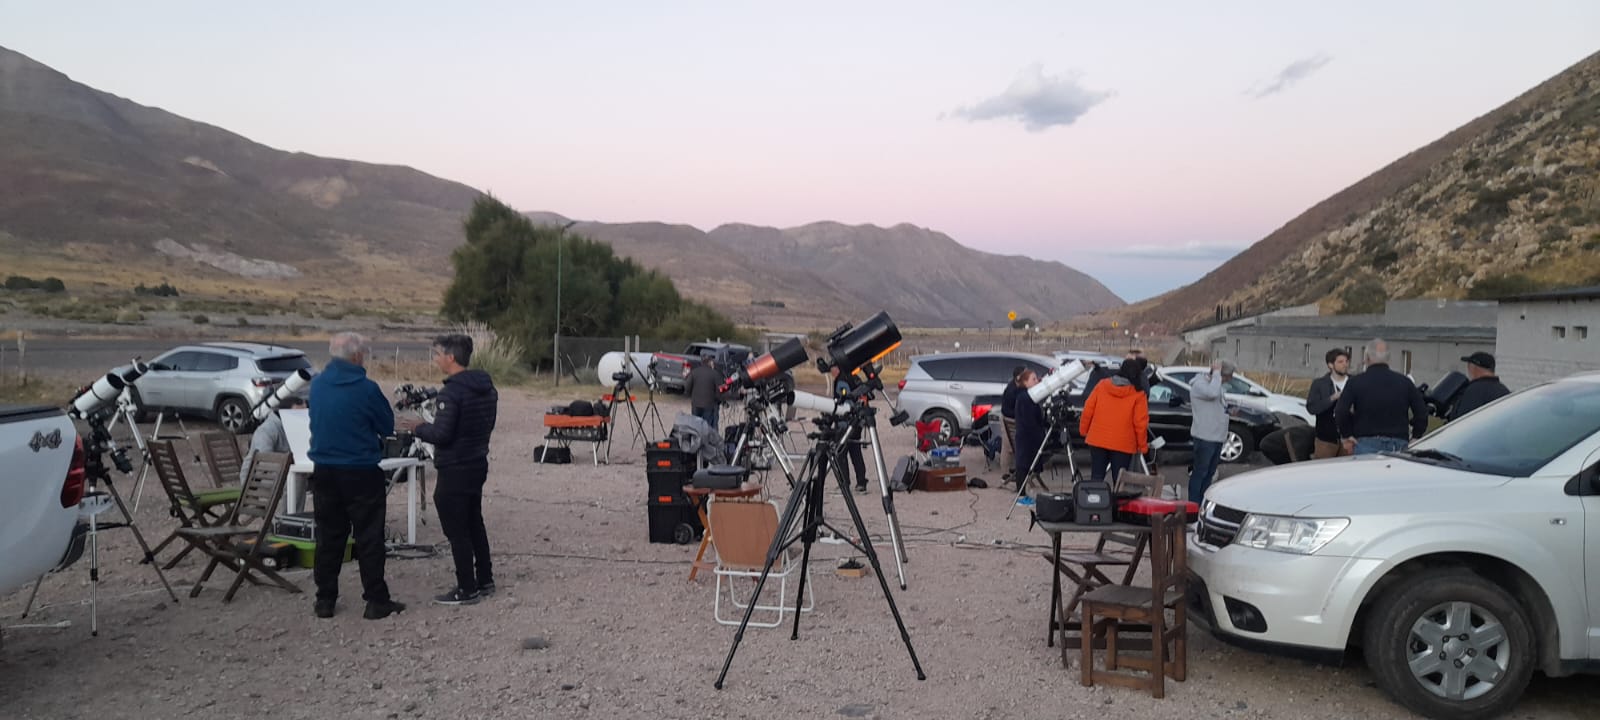 Instalacion de telescopios y camaras fotograficas previo a la noche de observacion. Paisaje cordillerano